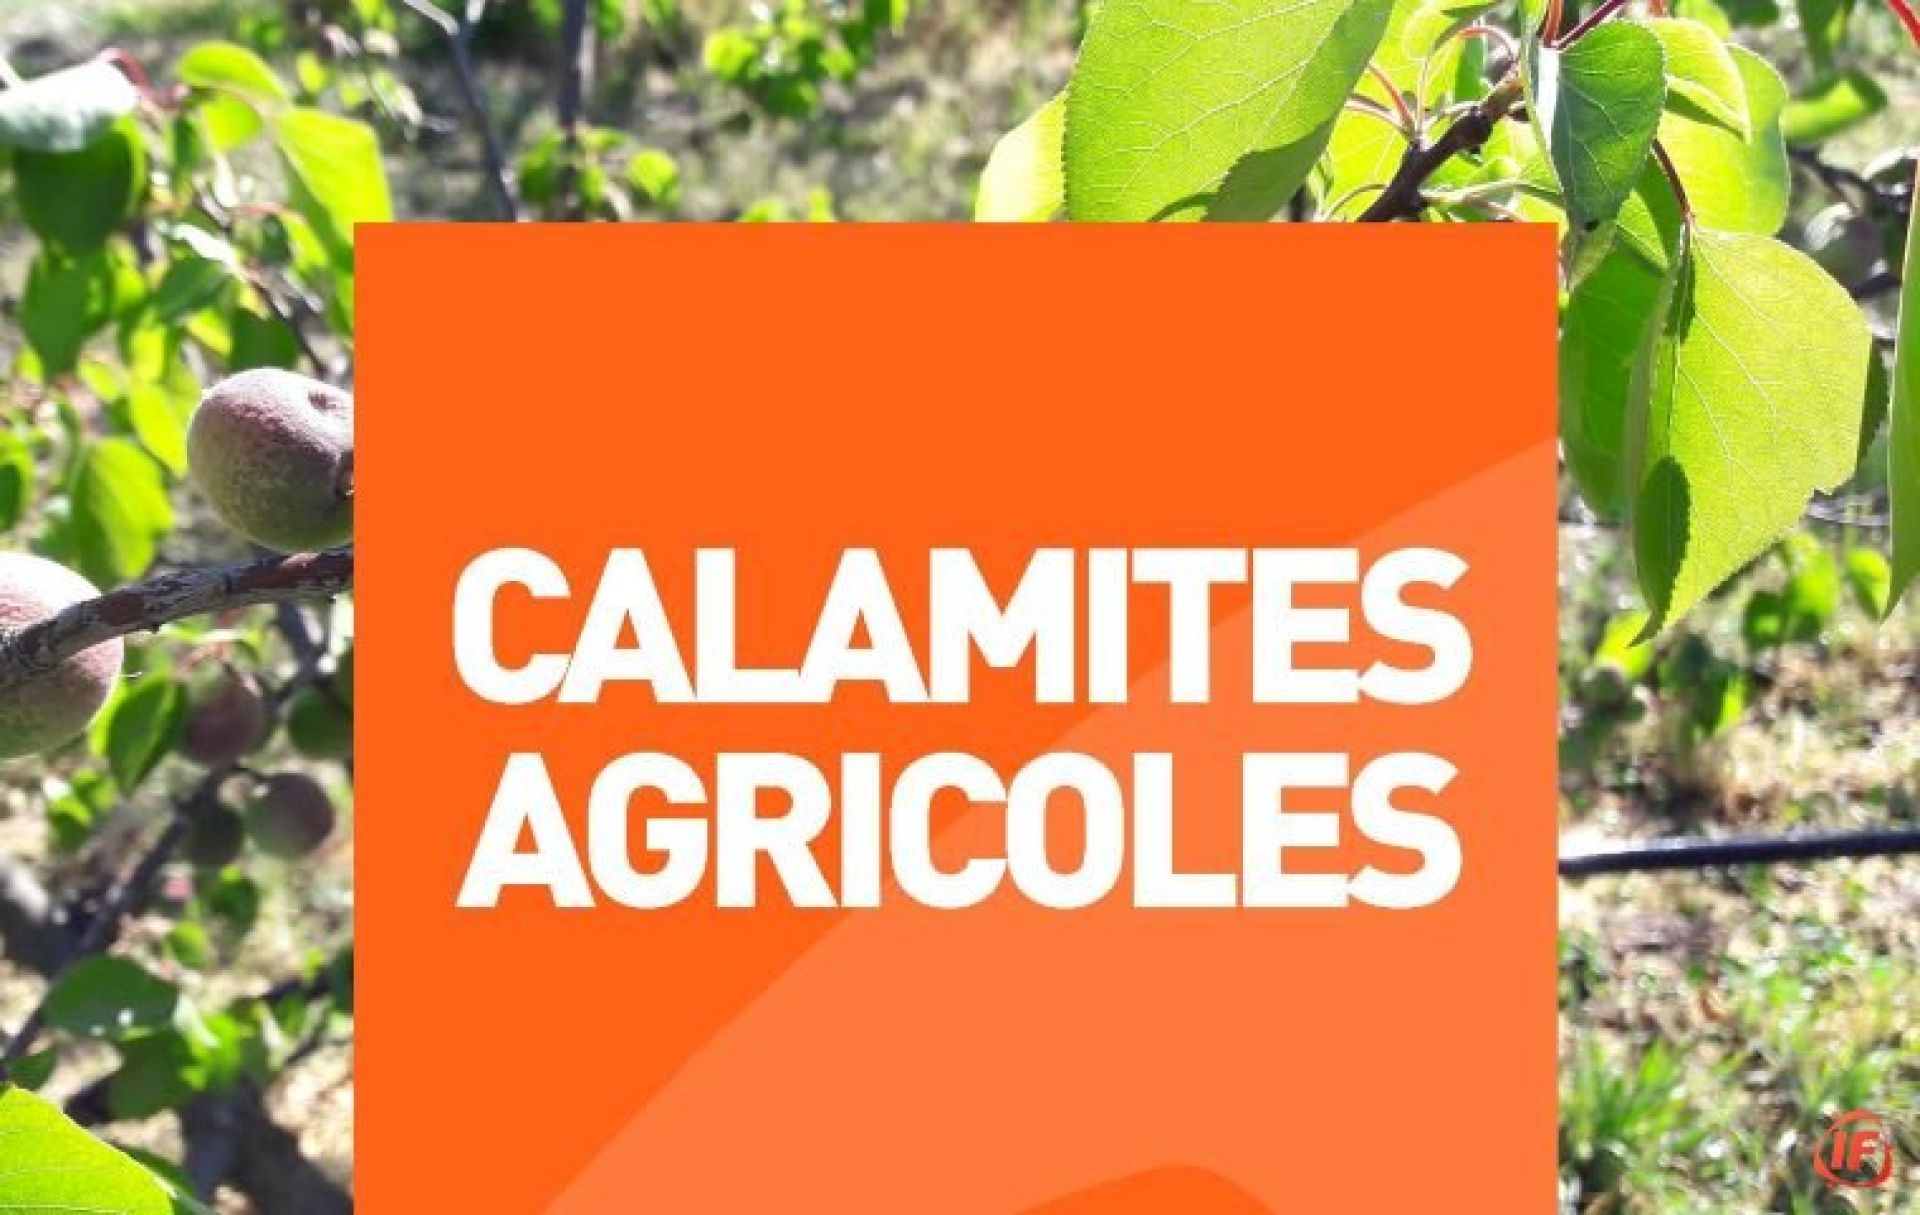 calamites-agricoles-gel-du-8-avril-2021-163066339